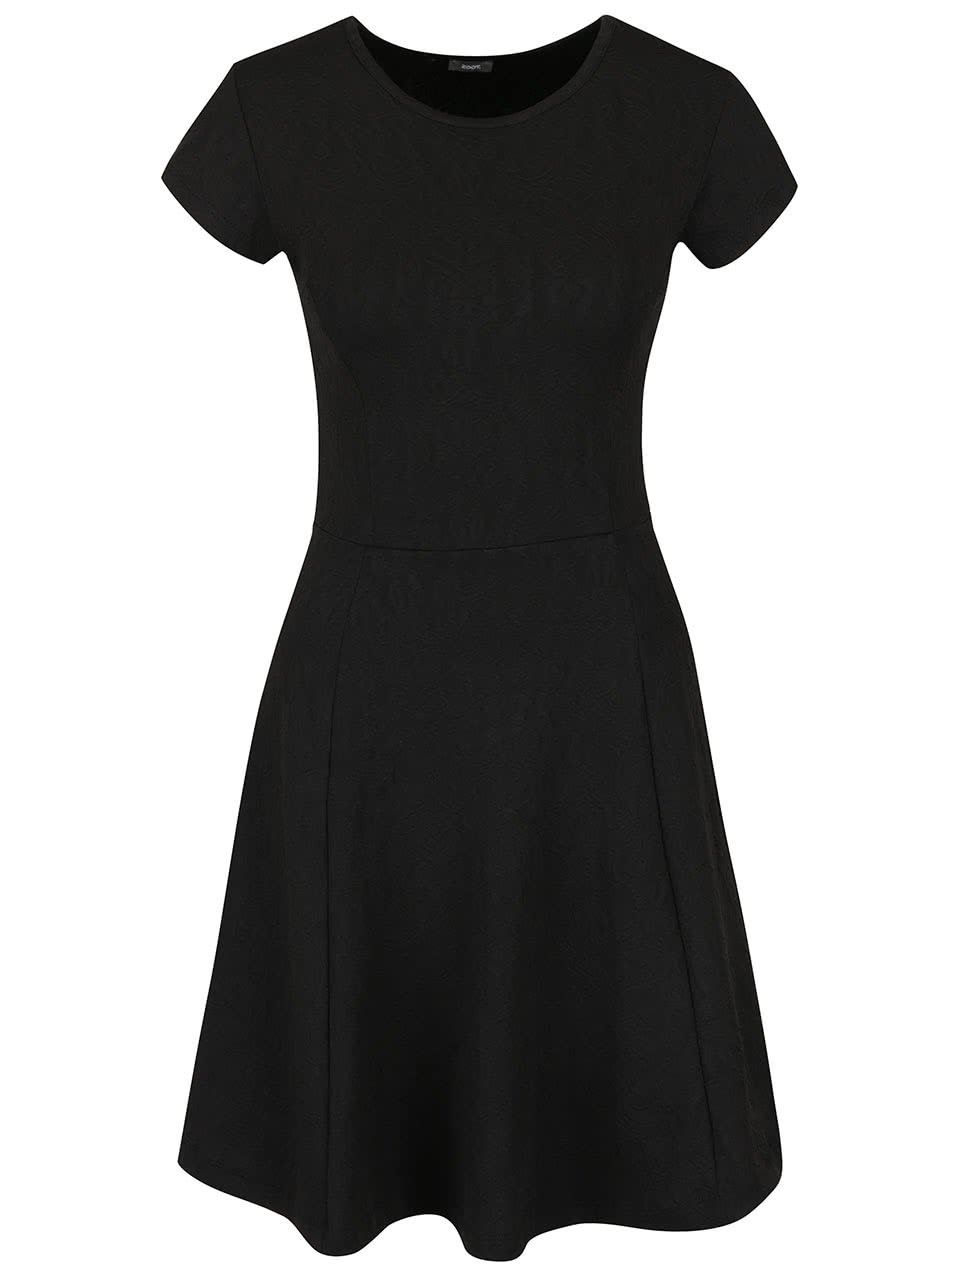 Černé šaty s jemným plastickým vzorem ZOOT